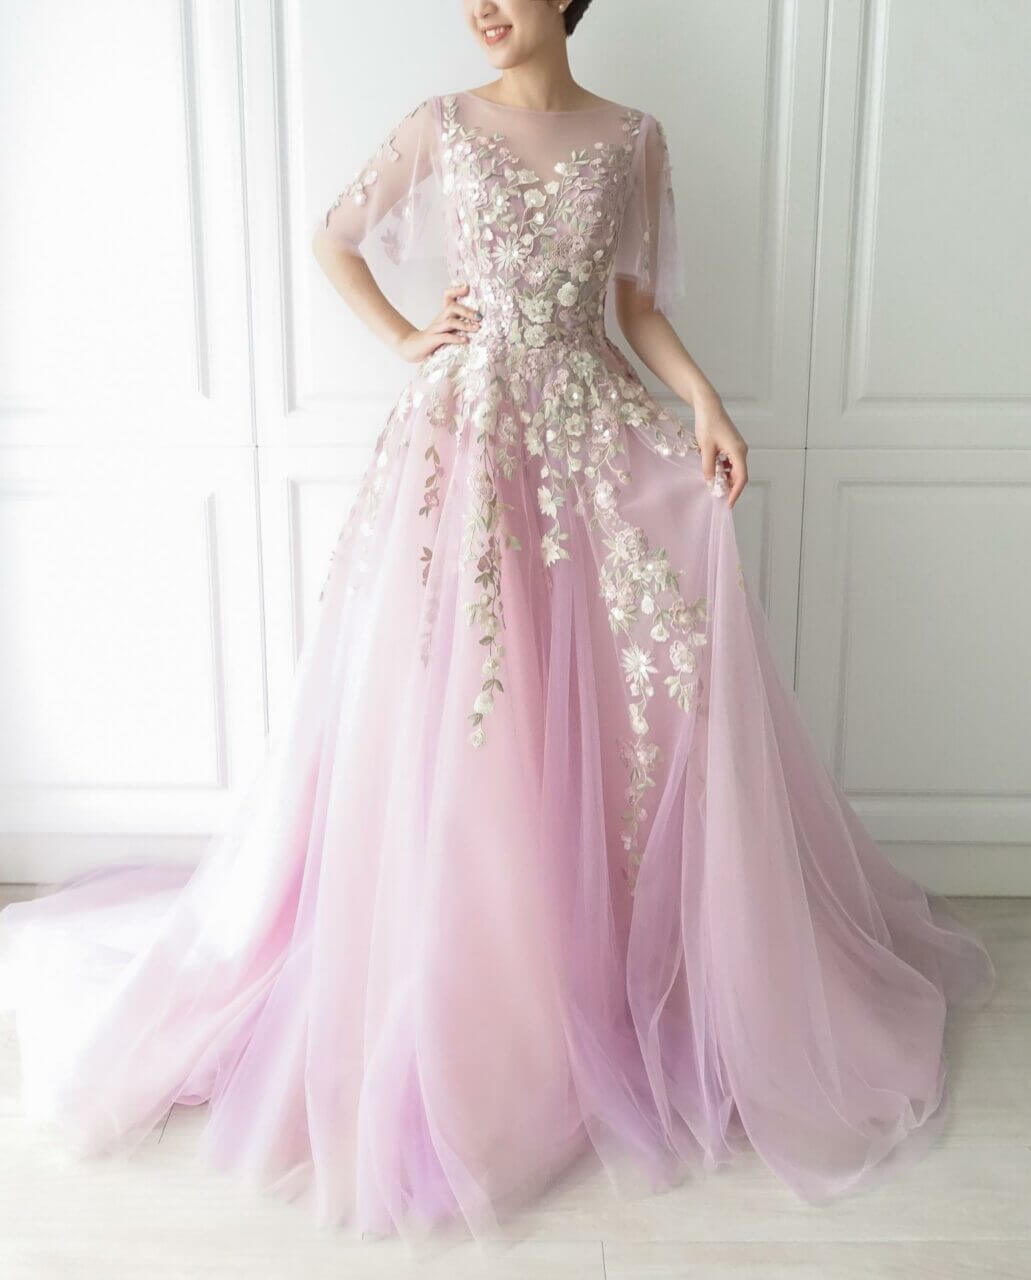 世界上最美仙女裙礼服图片